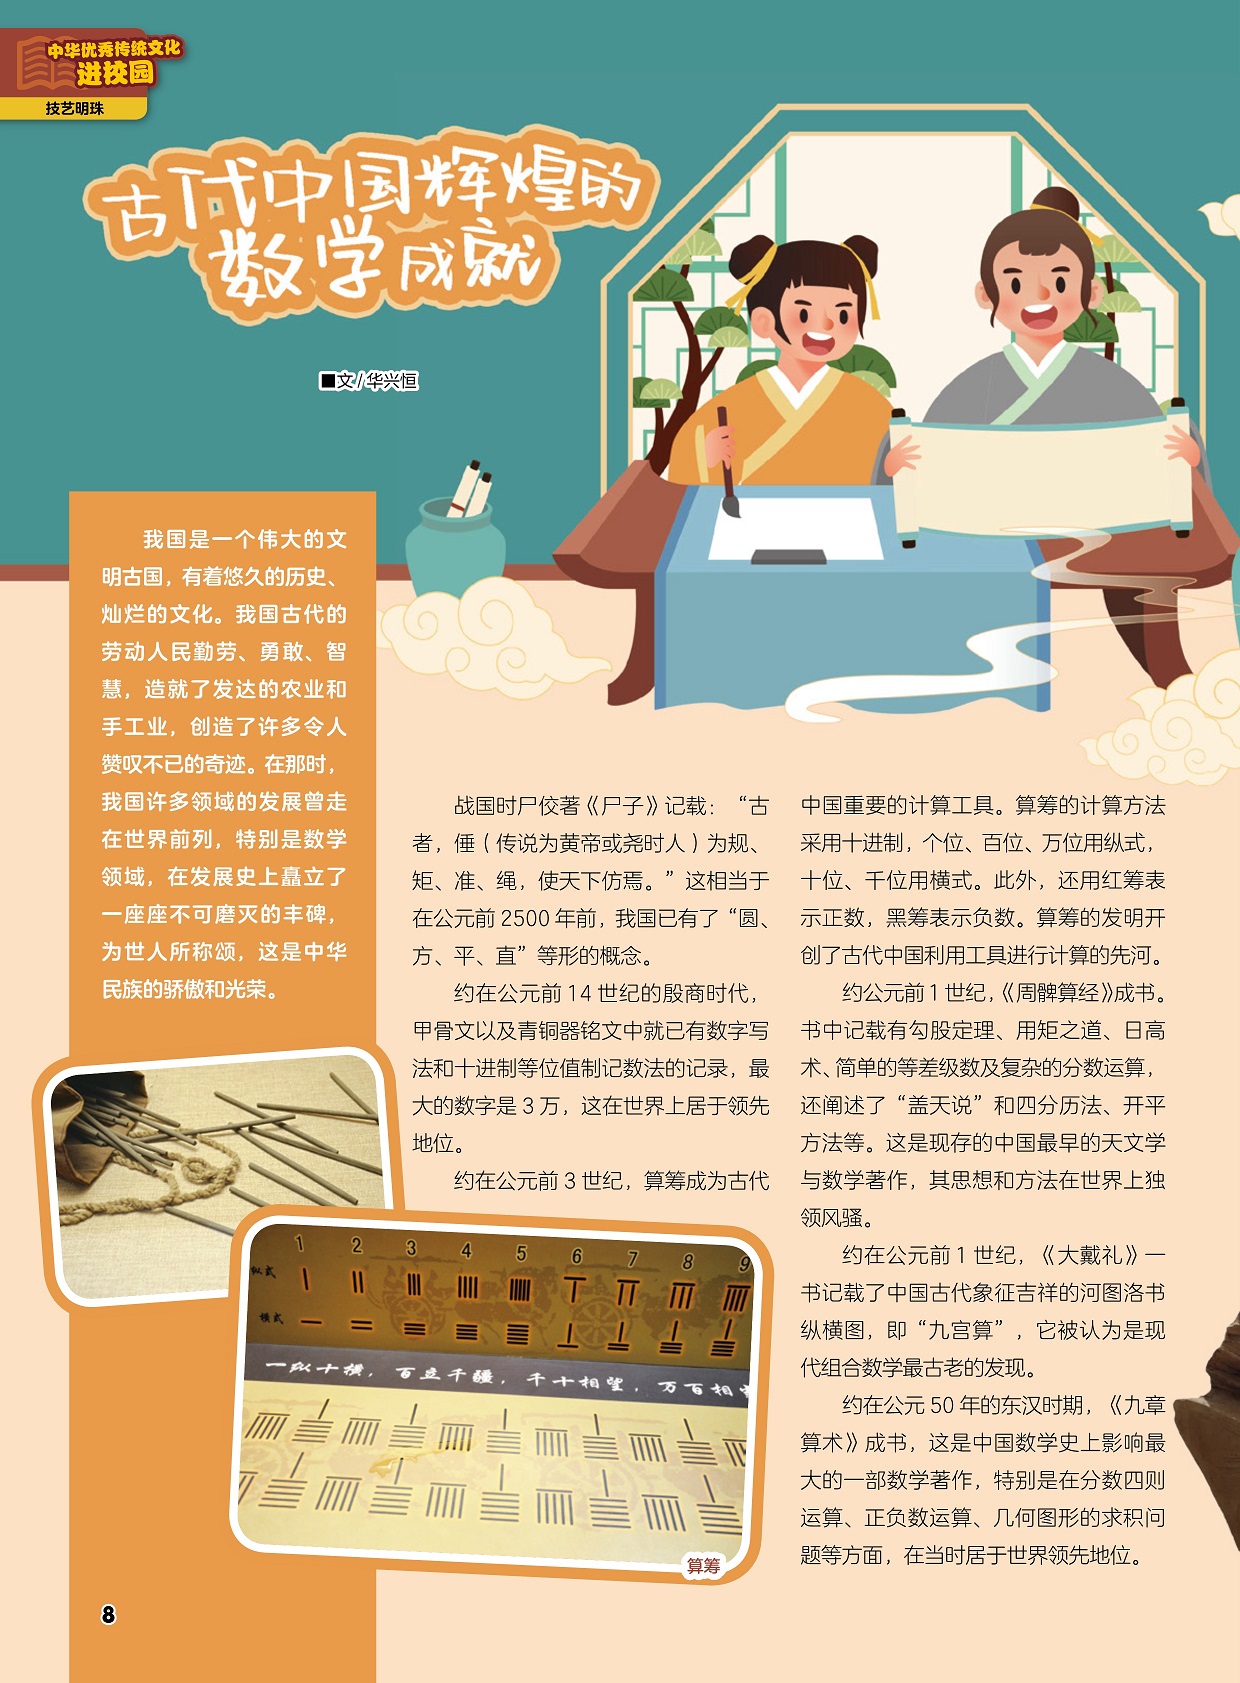 中国历史数字写法和十进制等位值制记数法,算筹成为古代中国重要的计算工具